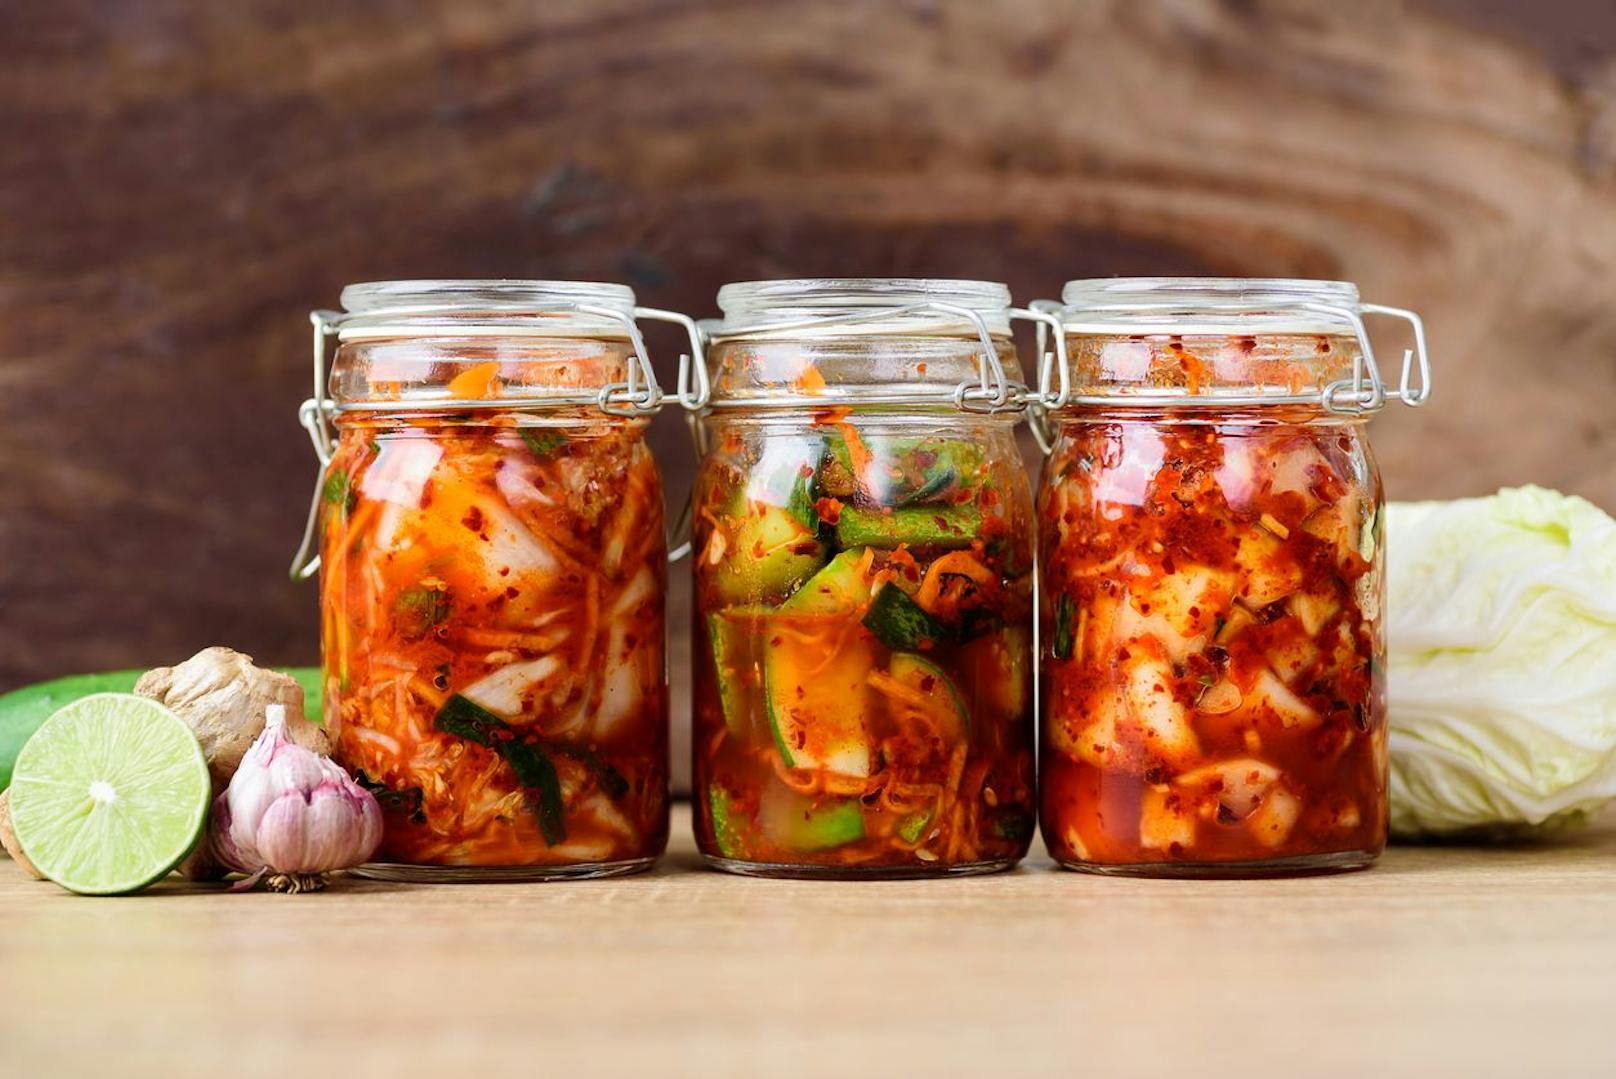 Unterschätze auf keinen Fall die Kraft von fermentierten Lebensmitteln wie Sauerkraut oder dem koreanischen Kimchi. Lass dir den Kraut schmecken, denn er unterstützt deinen Körper beim Abtransport von bösartigen Bakterien. 